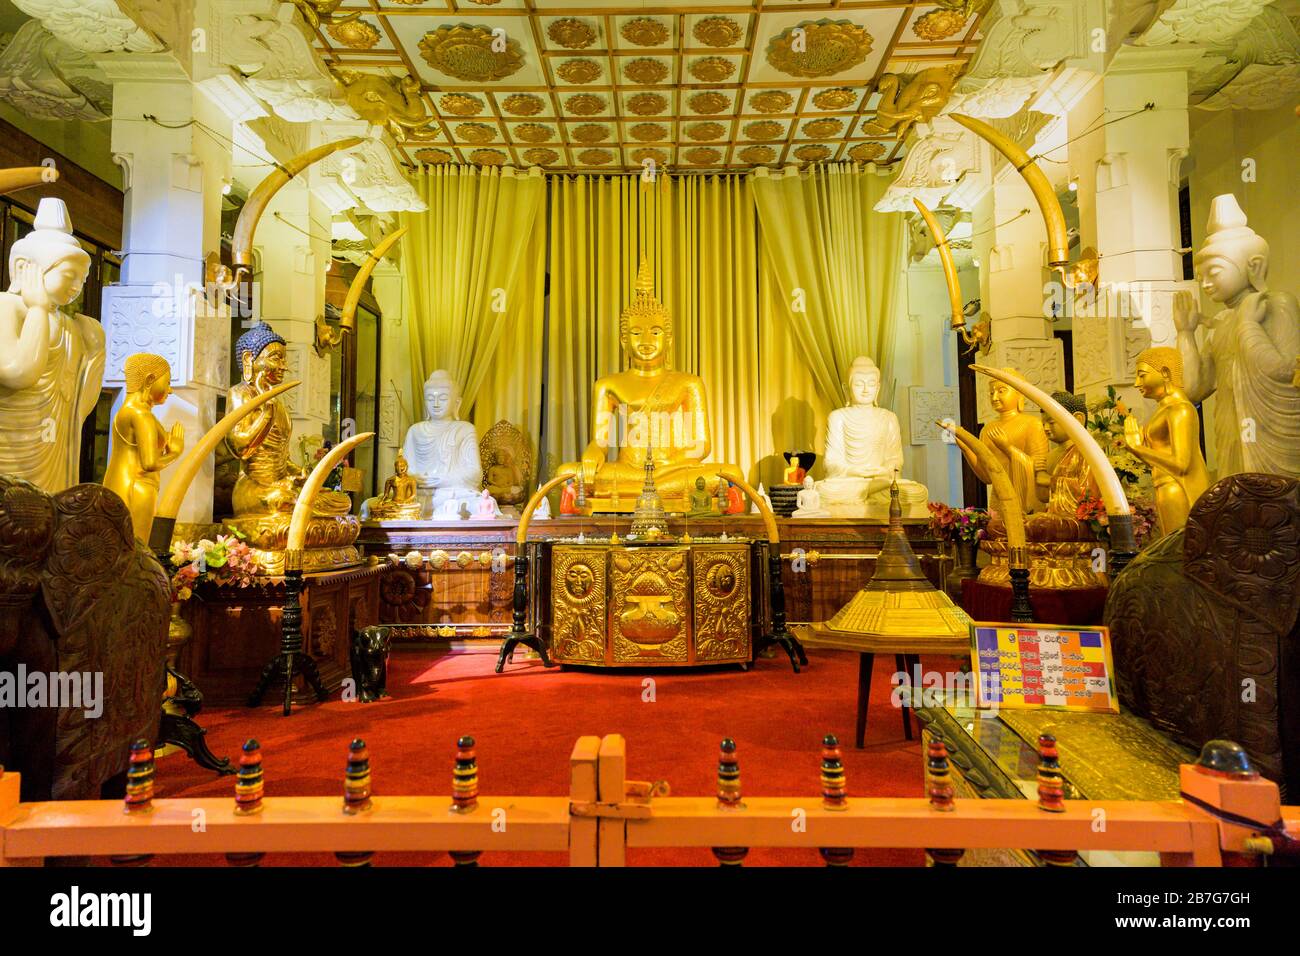 Sri Lanka Kandy Sinhala ancienne capitale Sri Dalada Maligawa Temple du bouddhisme bouddhiste Rélique de la dent sacrée intérieur Banque D'Images